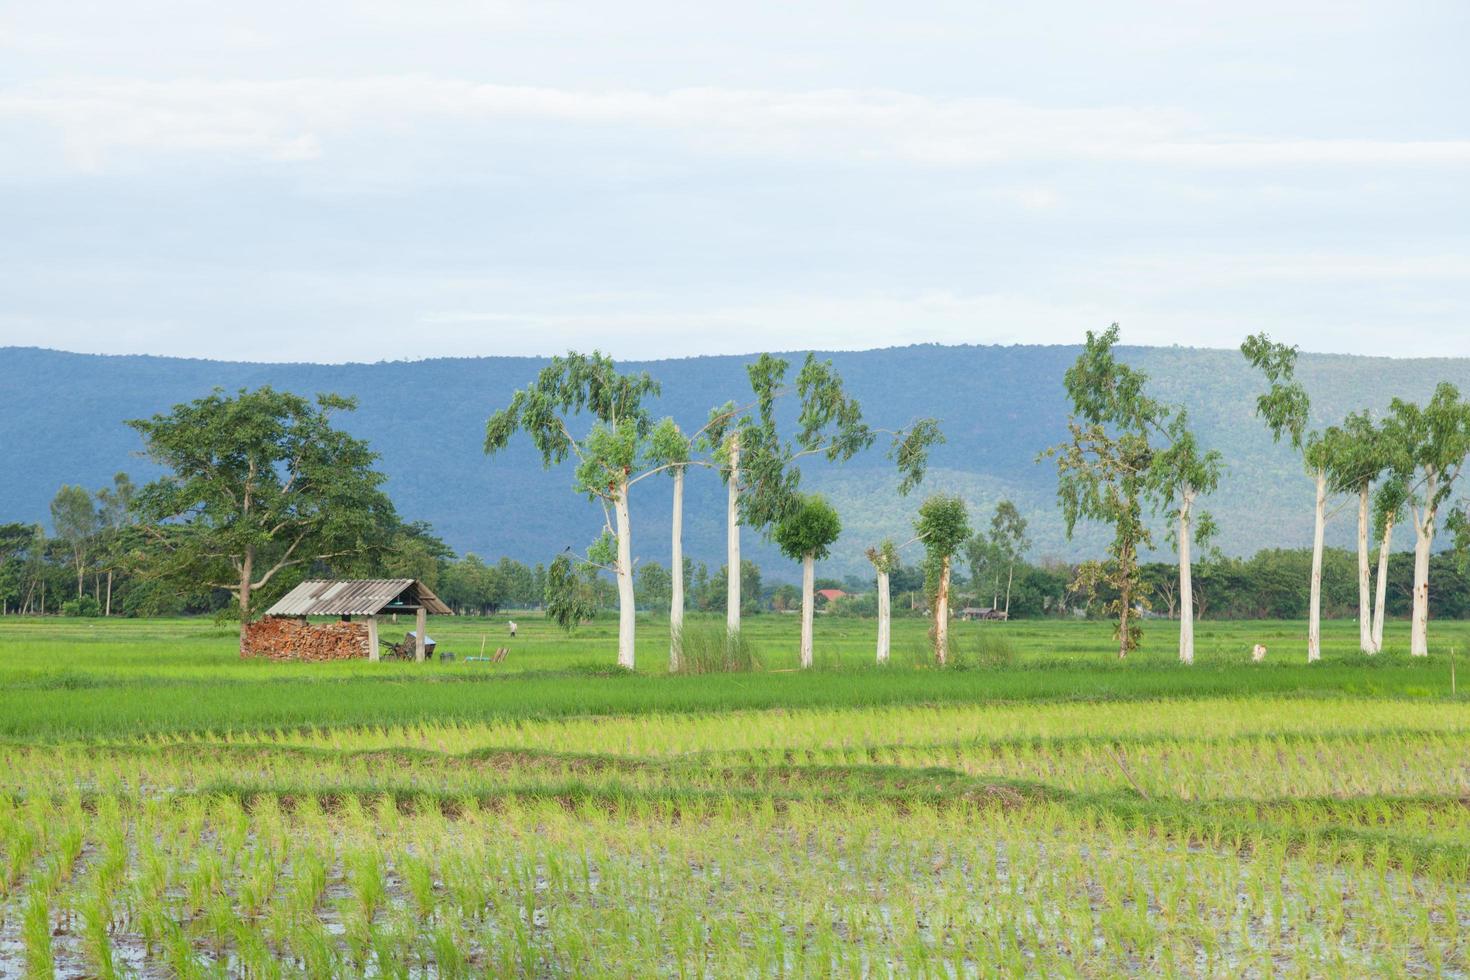 cabaña en los campos de arroz en tailandia foto